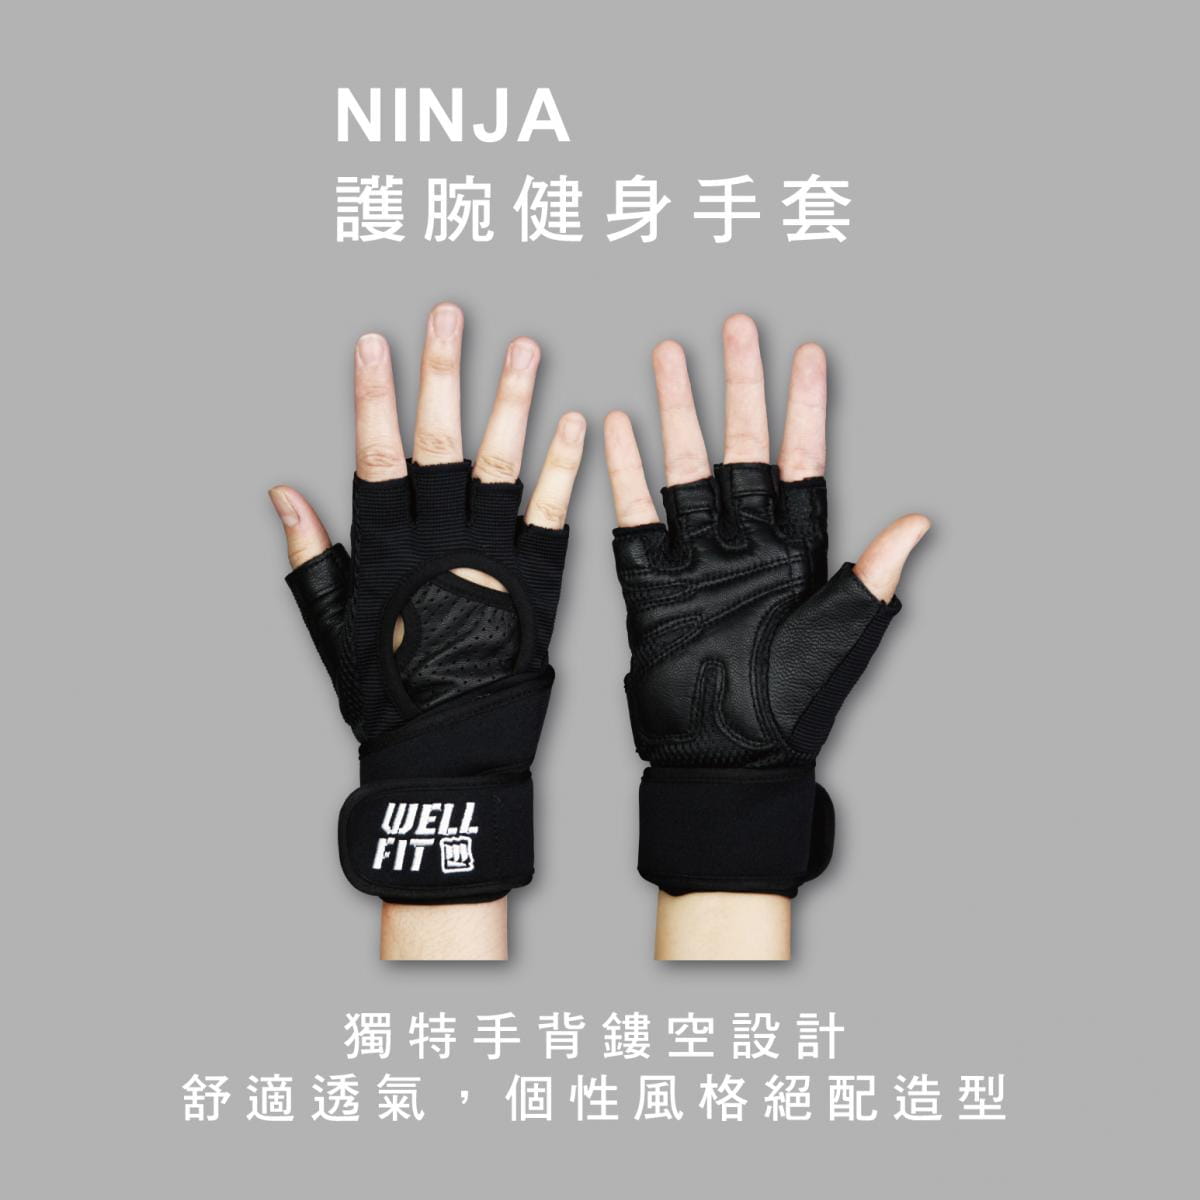 【威飛客手袋達人】護腕健身手套 - NINJA 0